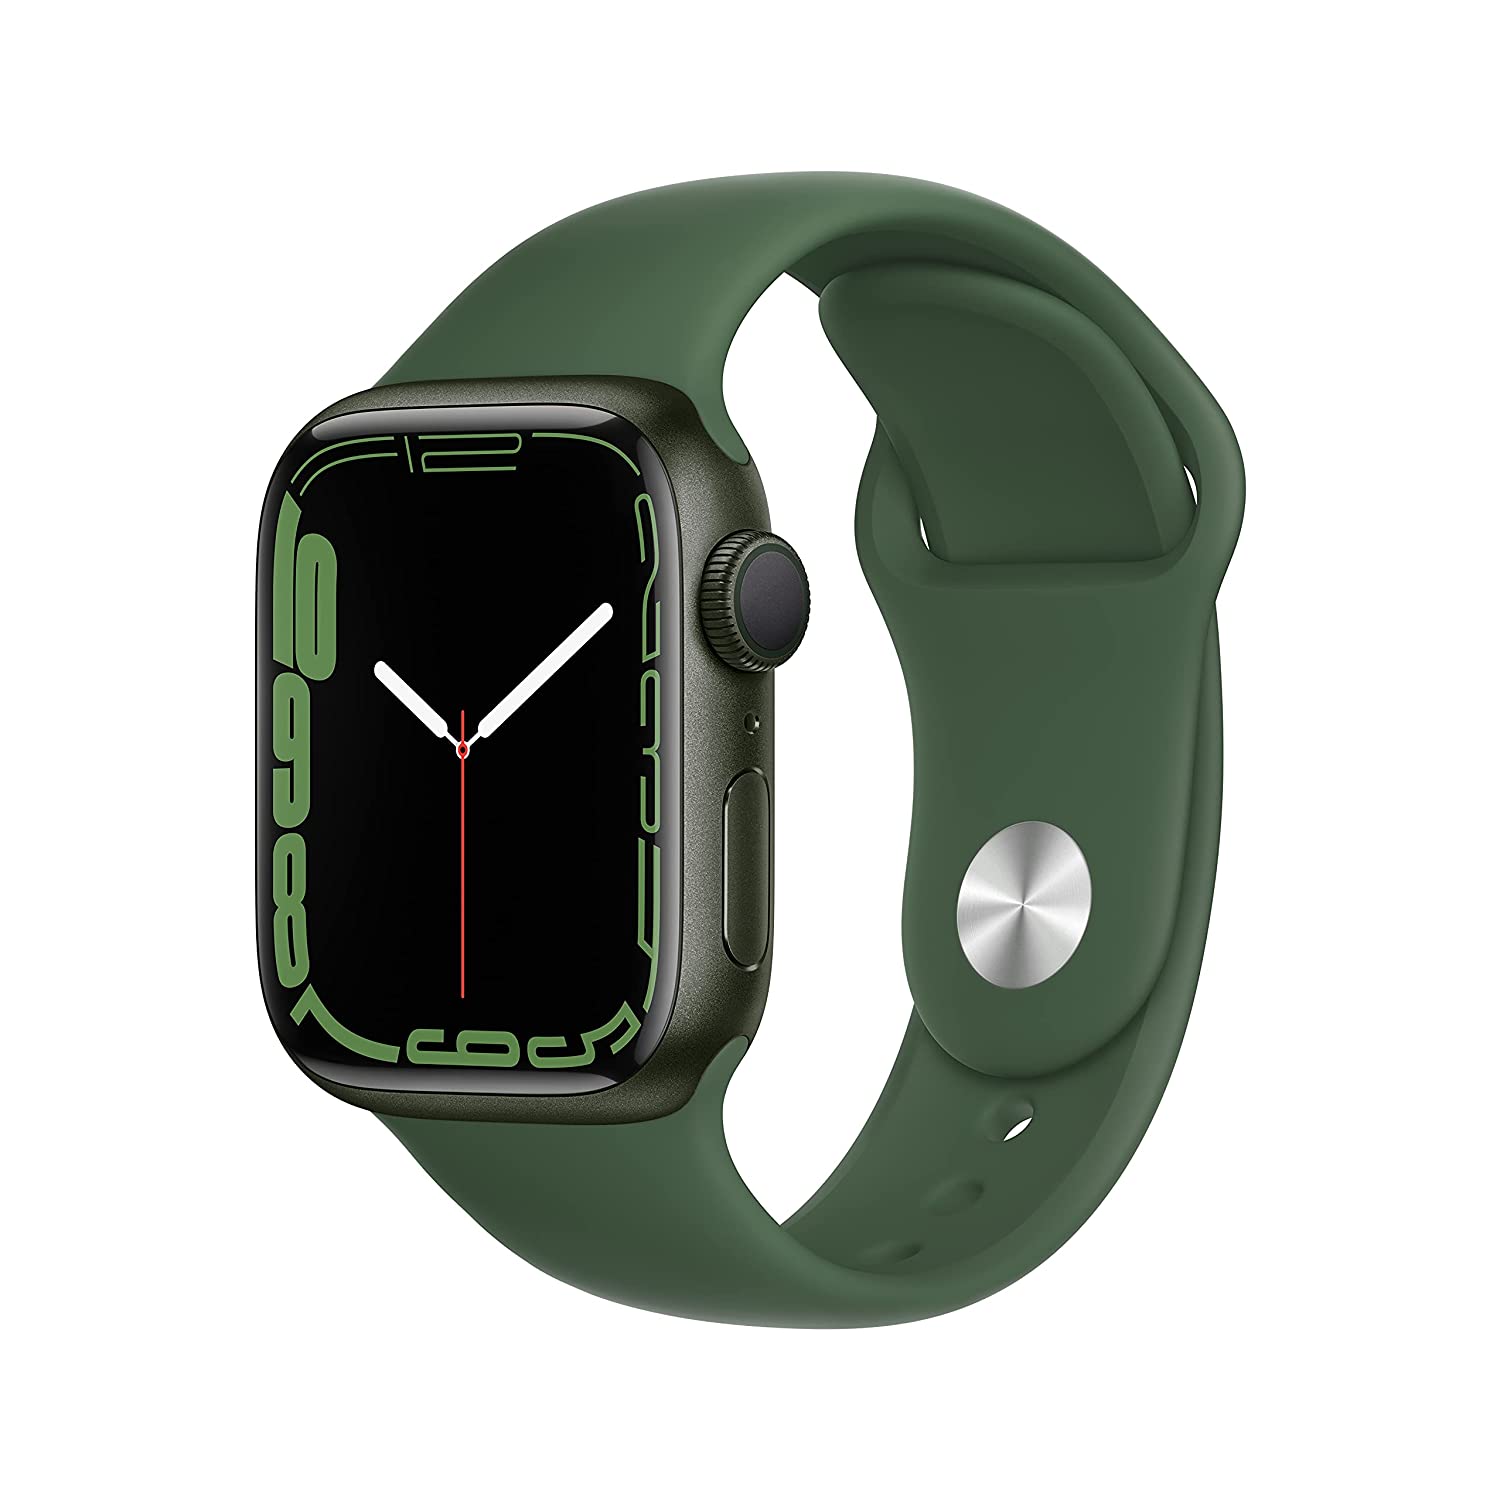 दिल का ख्याल रखने के लिये बेस्ट है ये Apple Watch, खरीदें 2 हजार से भी कम की EMI पर